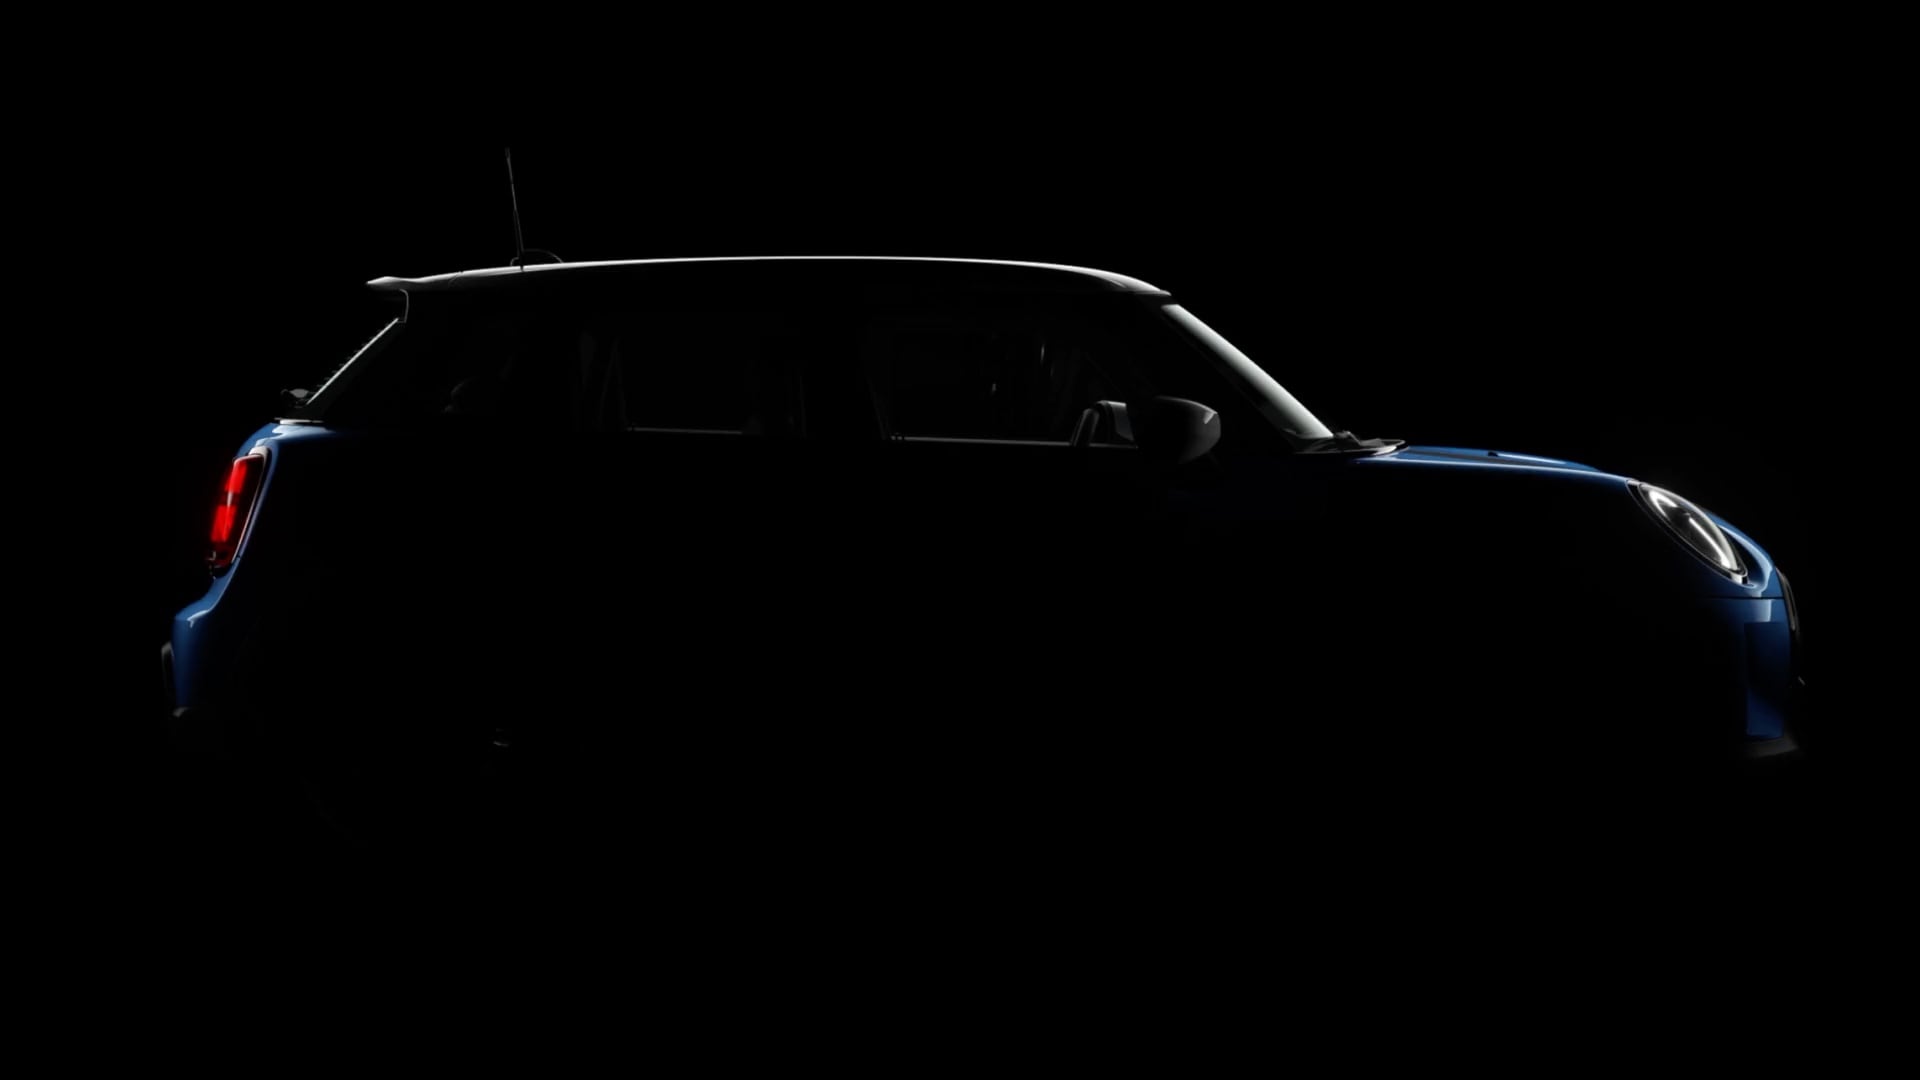 MINI Hatch 5 portes – espace à l’arrière – chargement